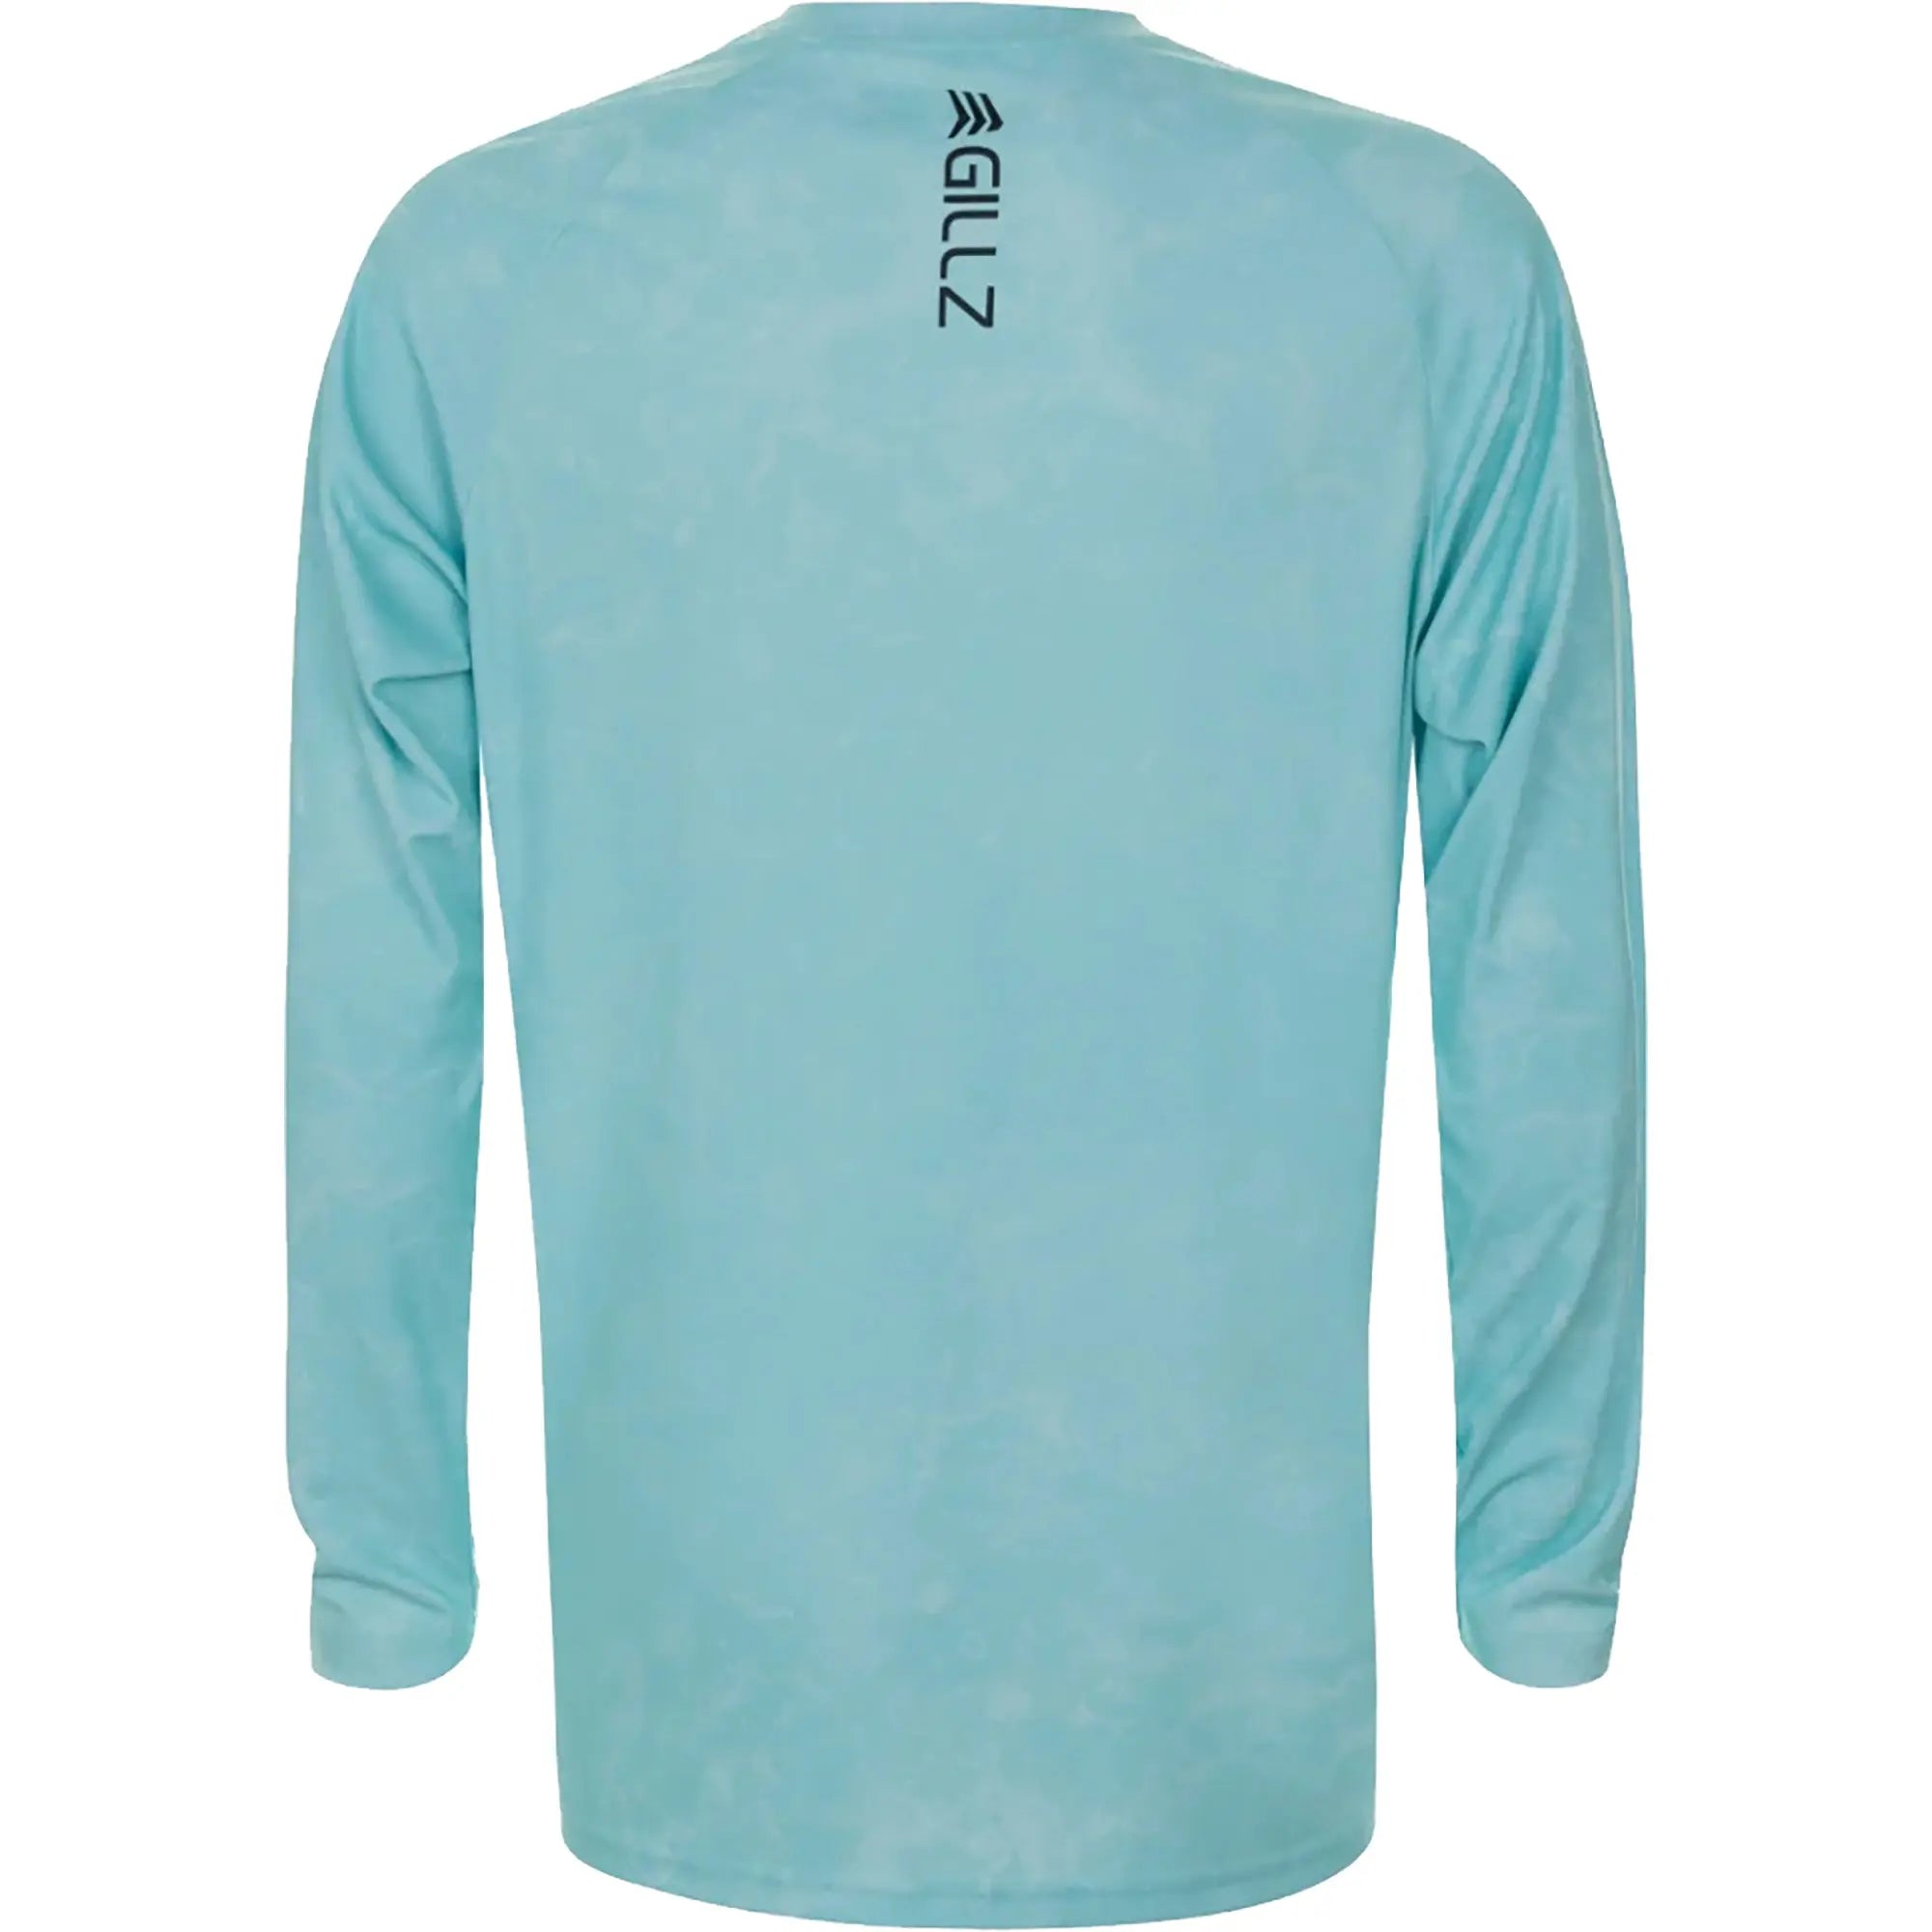 Gillz Contender Series ASSLT UV Long Sleeve T-Shirt - Aruba Blue Gillz